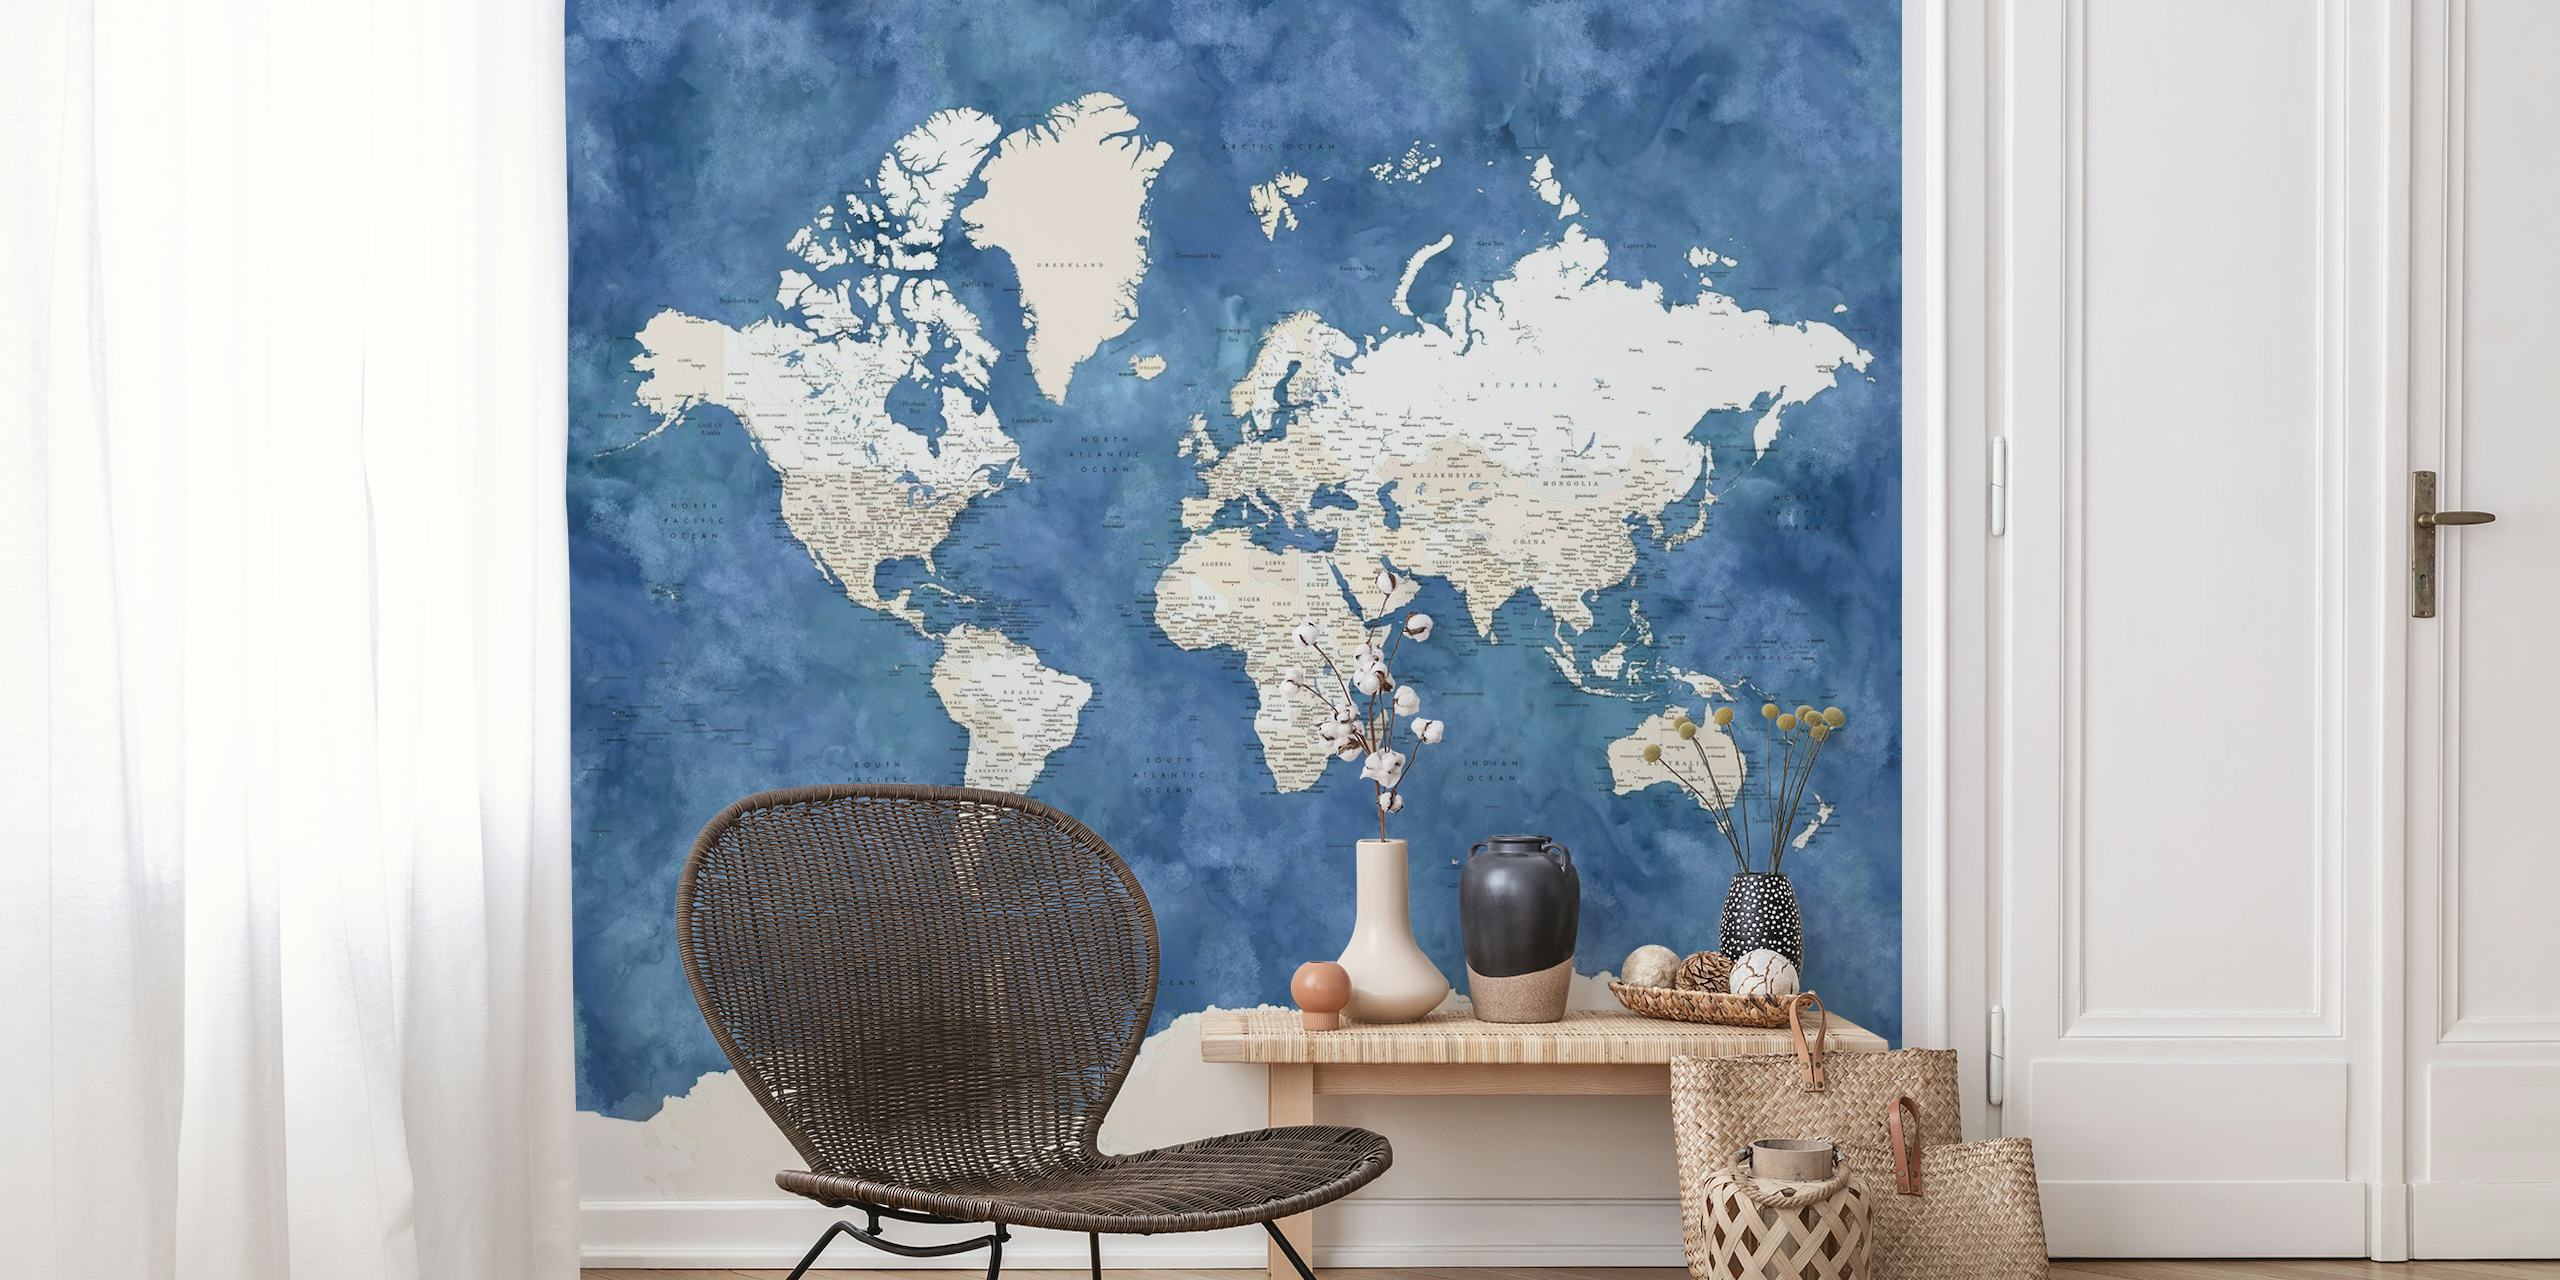 Zidna slika s kartom svijeta usredotočena na Antarktiku u nijansama bijele i plave